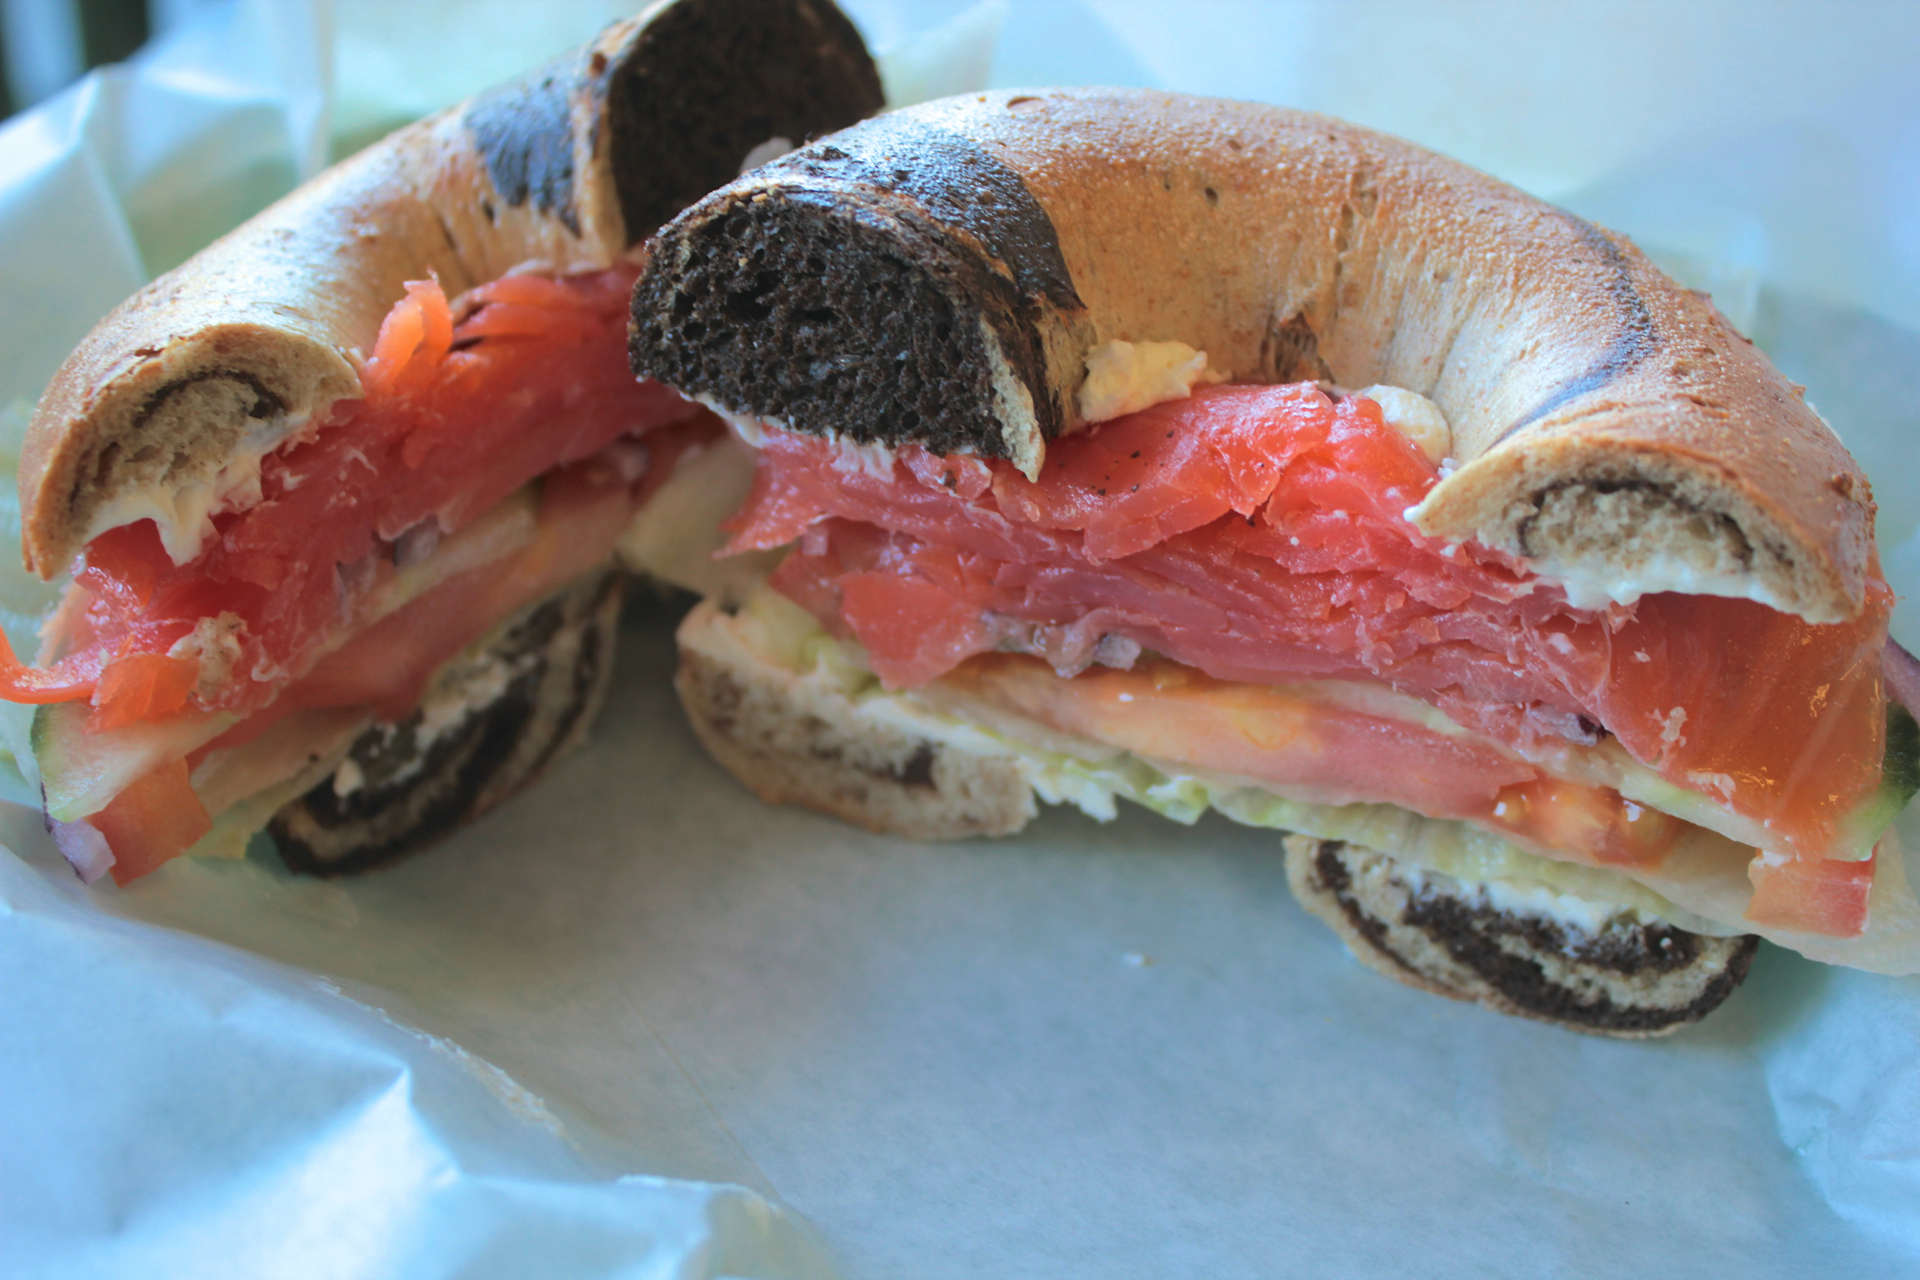 A lox sandwich on a pumpernickel-rye bagel at Saratoga Bagels.